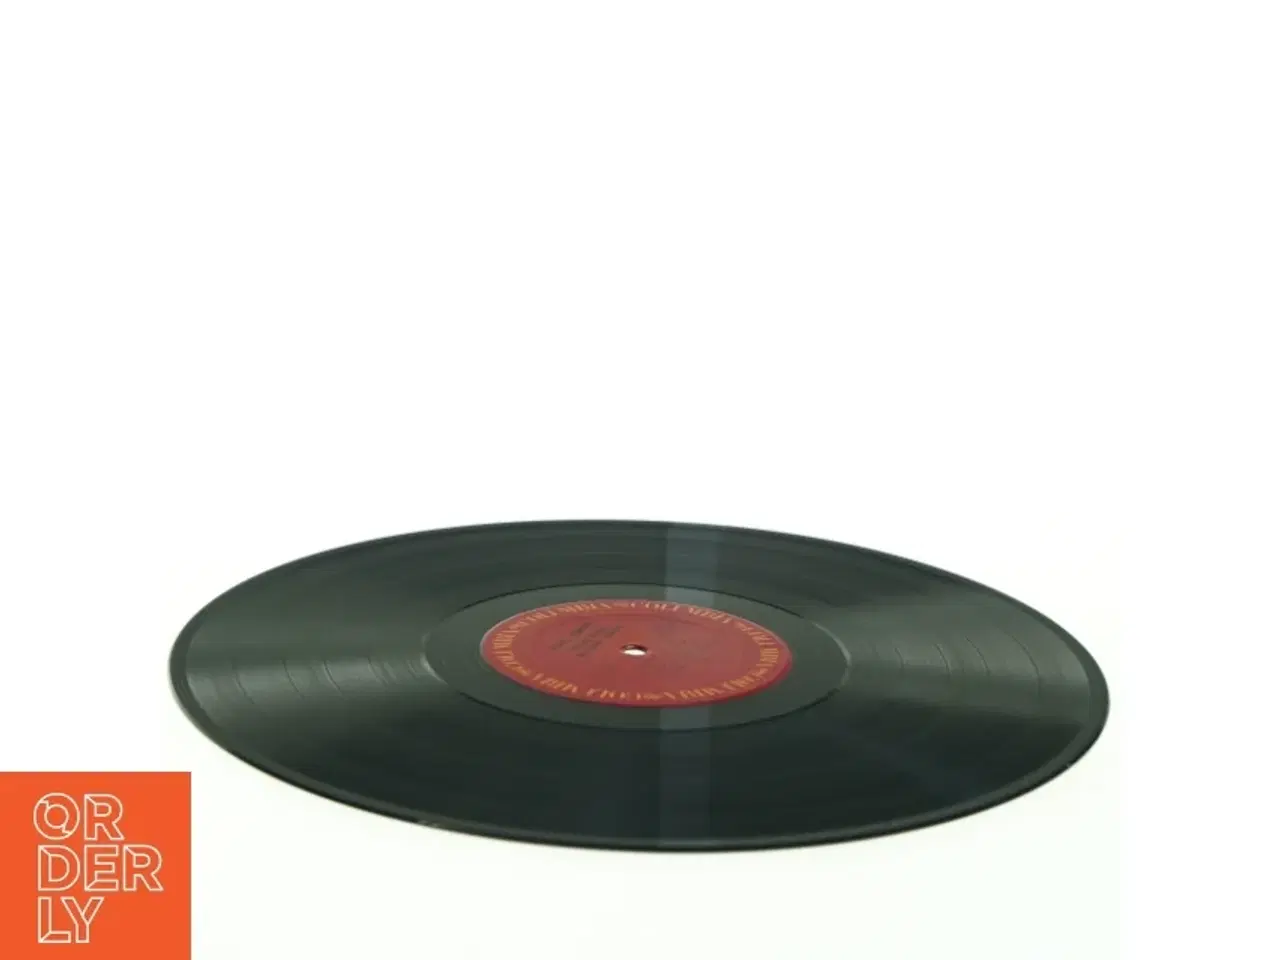 Billede 4 - Paul Simon 'There Goes Rhymin' Simon' Vinyl LP fra Columbia (str. 31 x 31 cm)